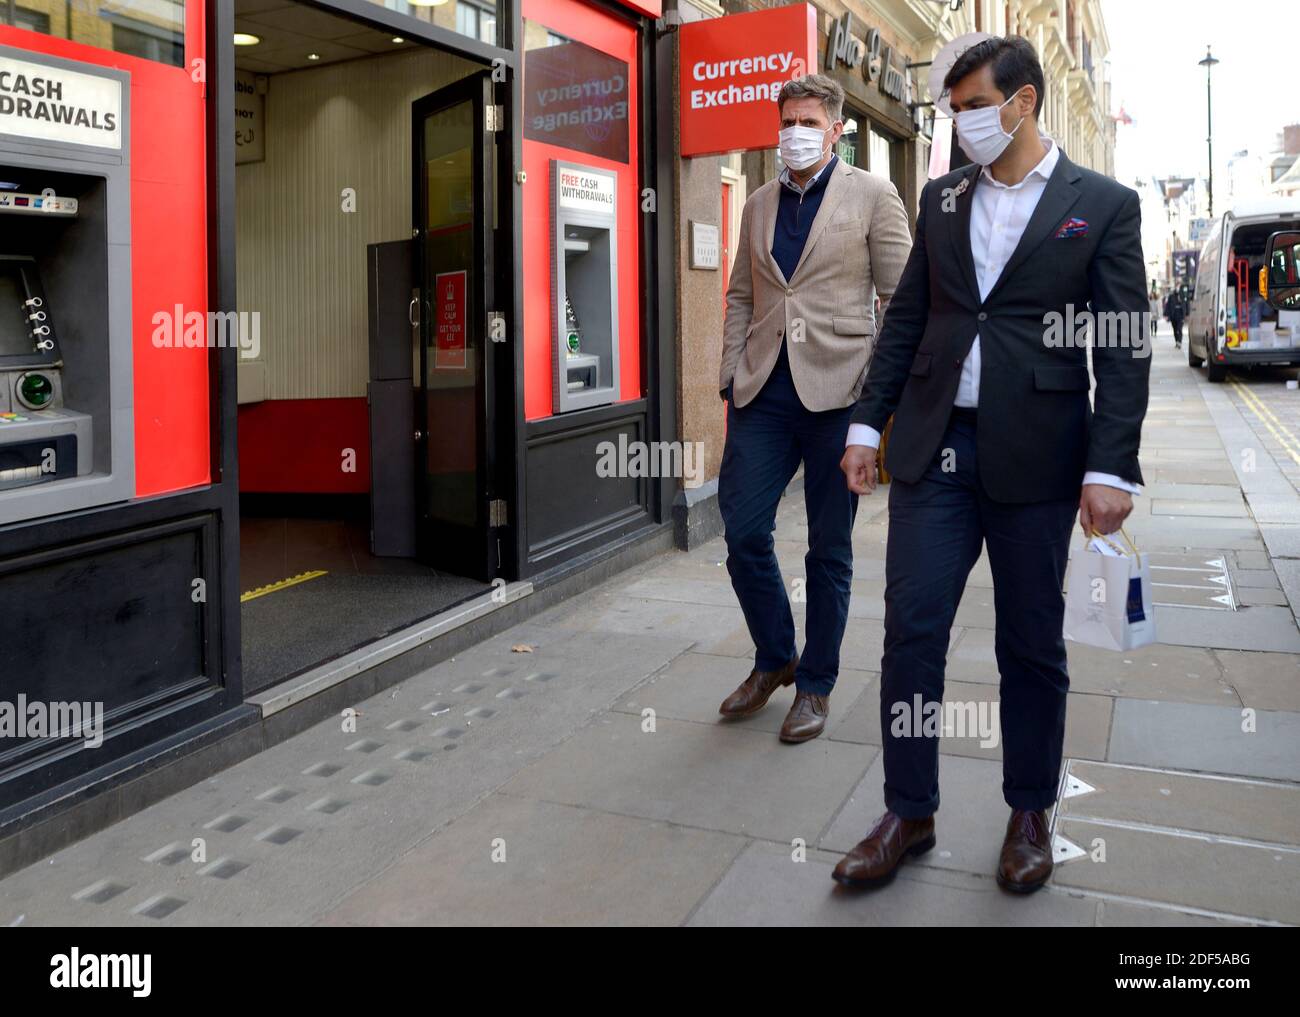 Londra, Inghilterra, Regno Unito. Uomini che indossano maschere facciali durante la pandemia COVID, 2020 Foto Stock